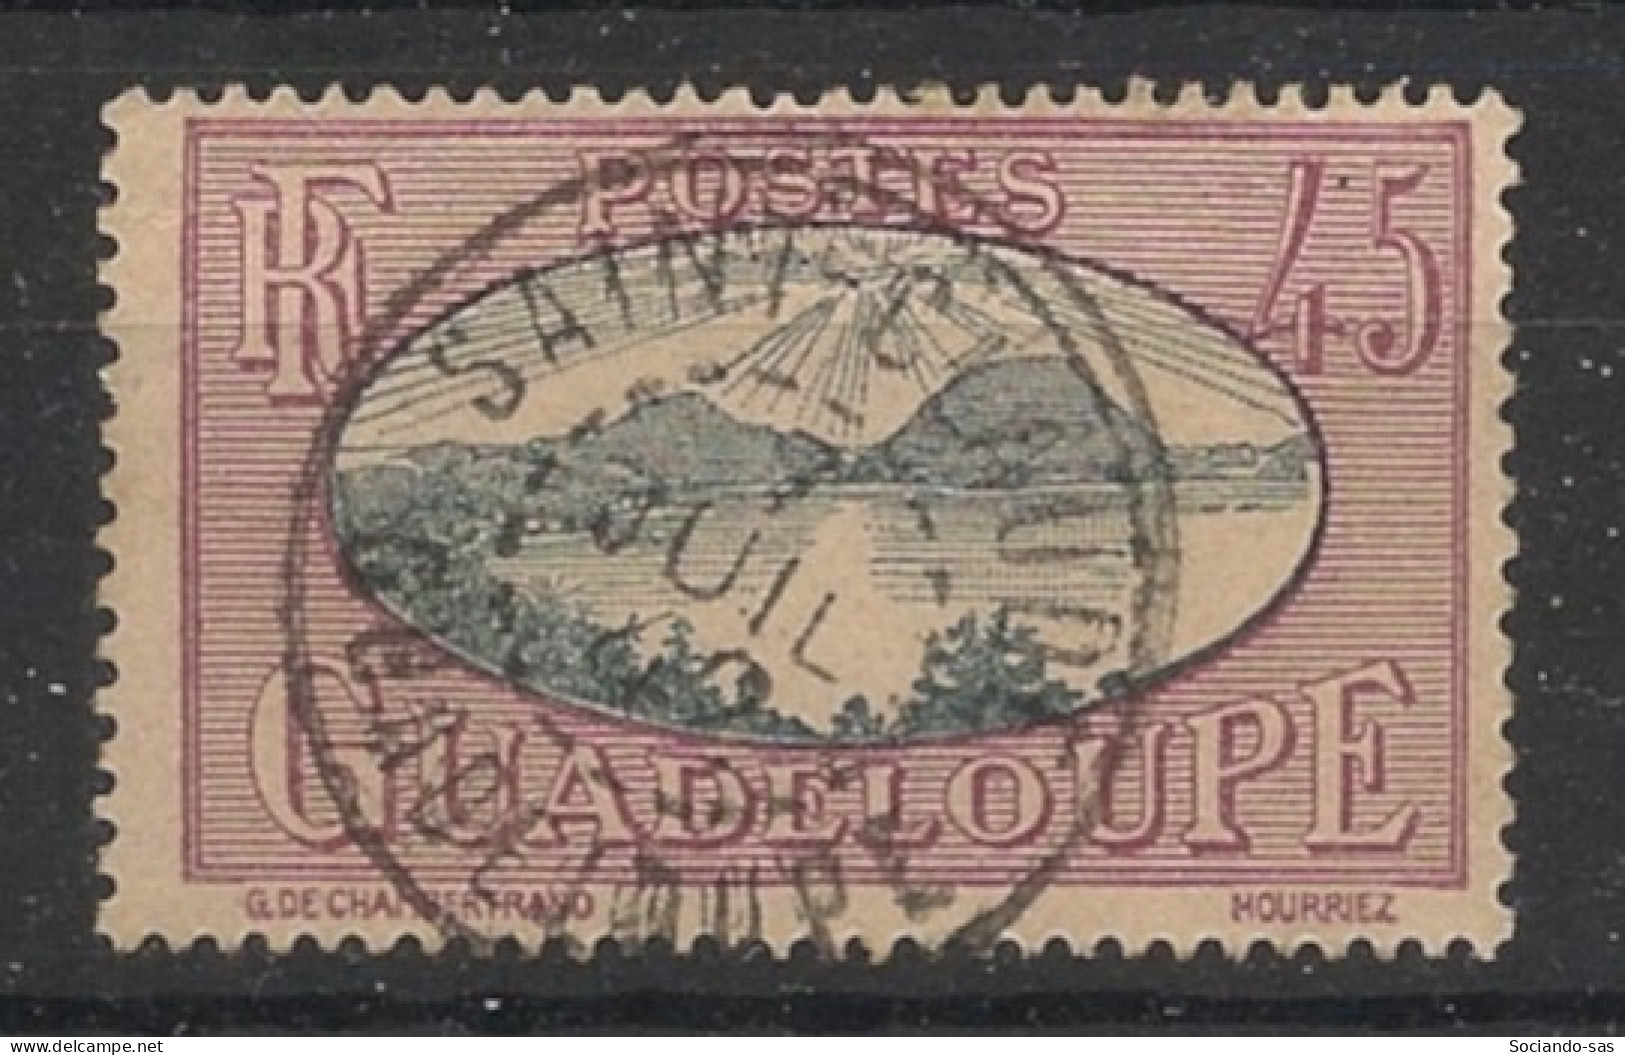 GUADELOUPE - 1928-38 - N°YT. 109 - Rade Des Saintes 45c - Oblitéré / Used - Oblitérés